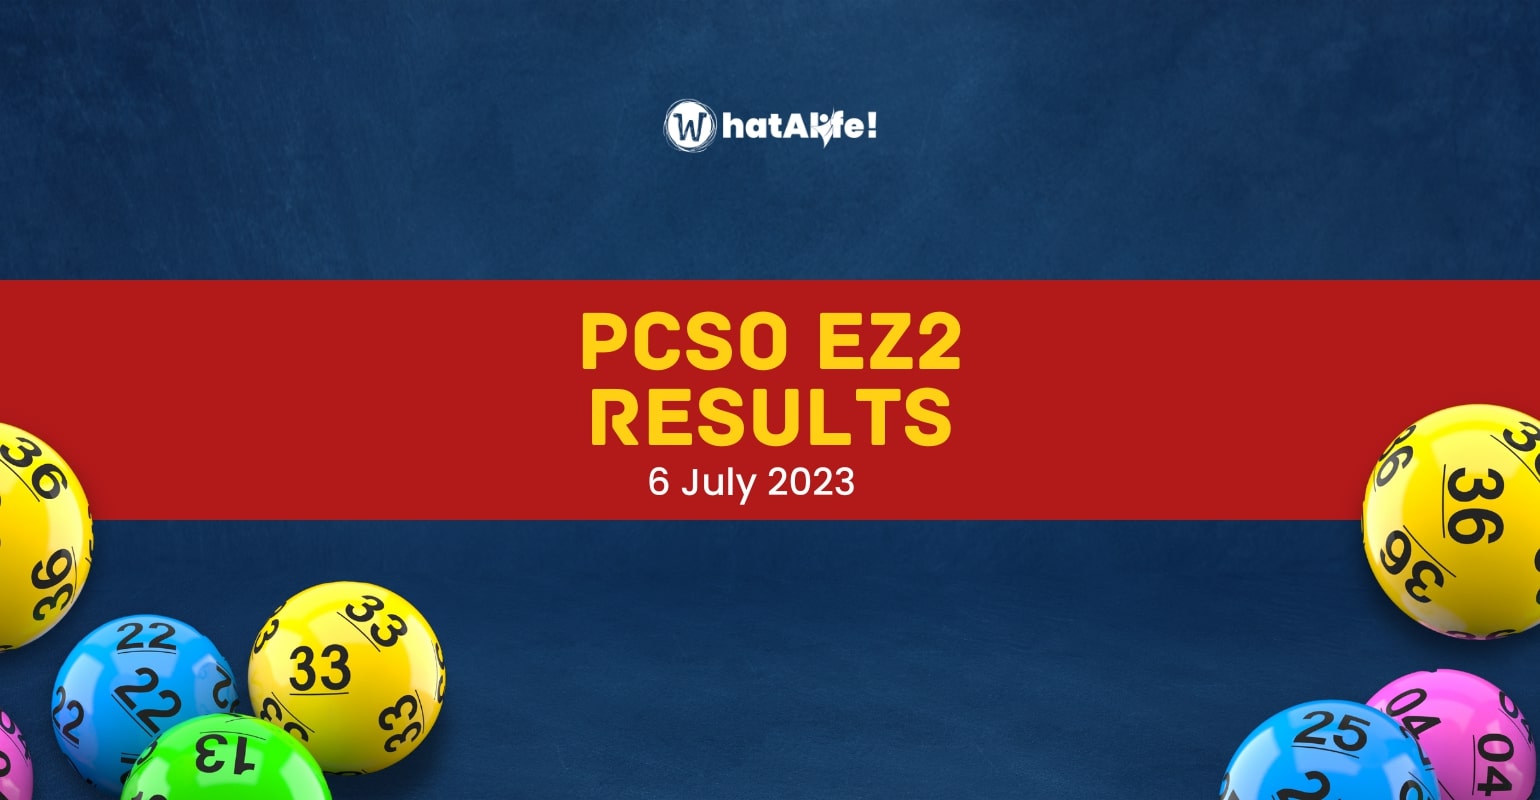 EZ2 2D RESULTS July 6, 2023 (Thursday)